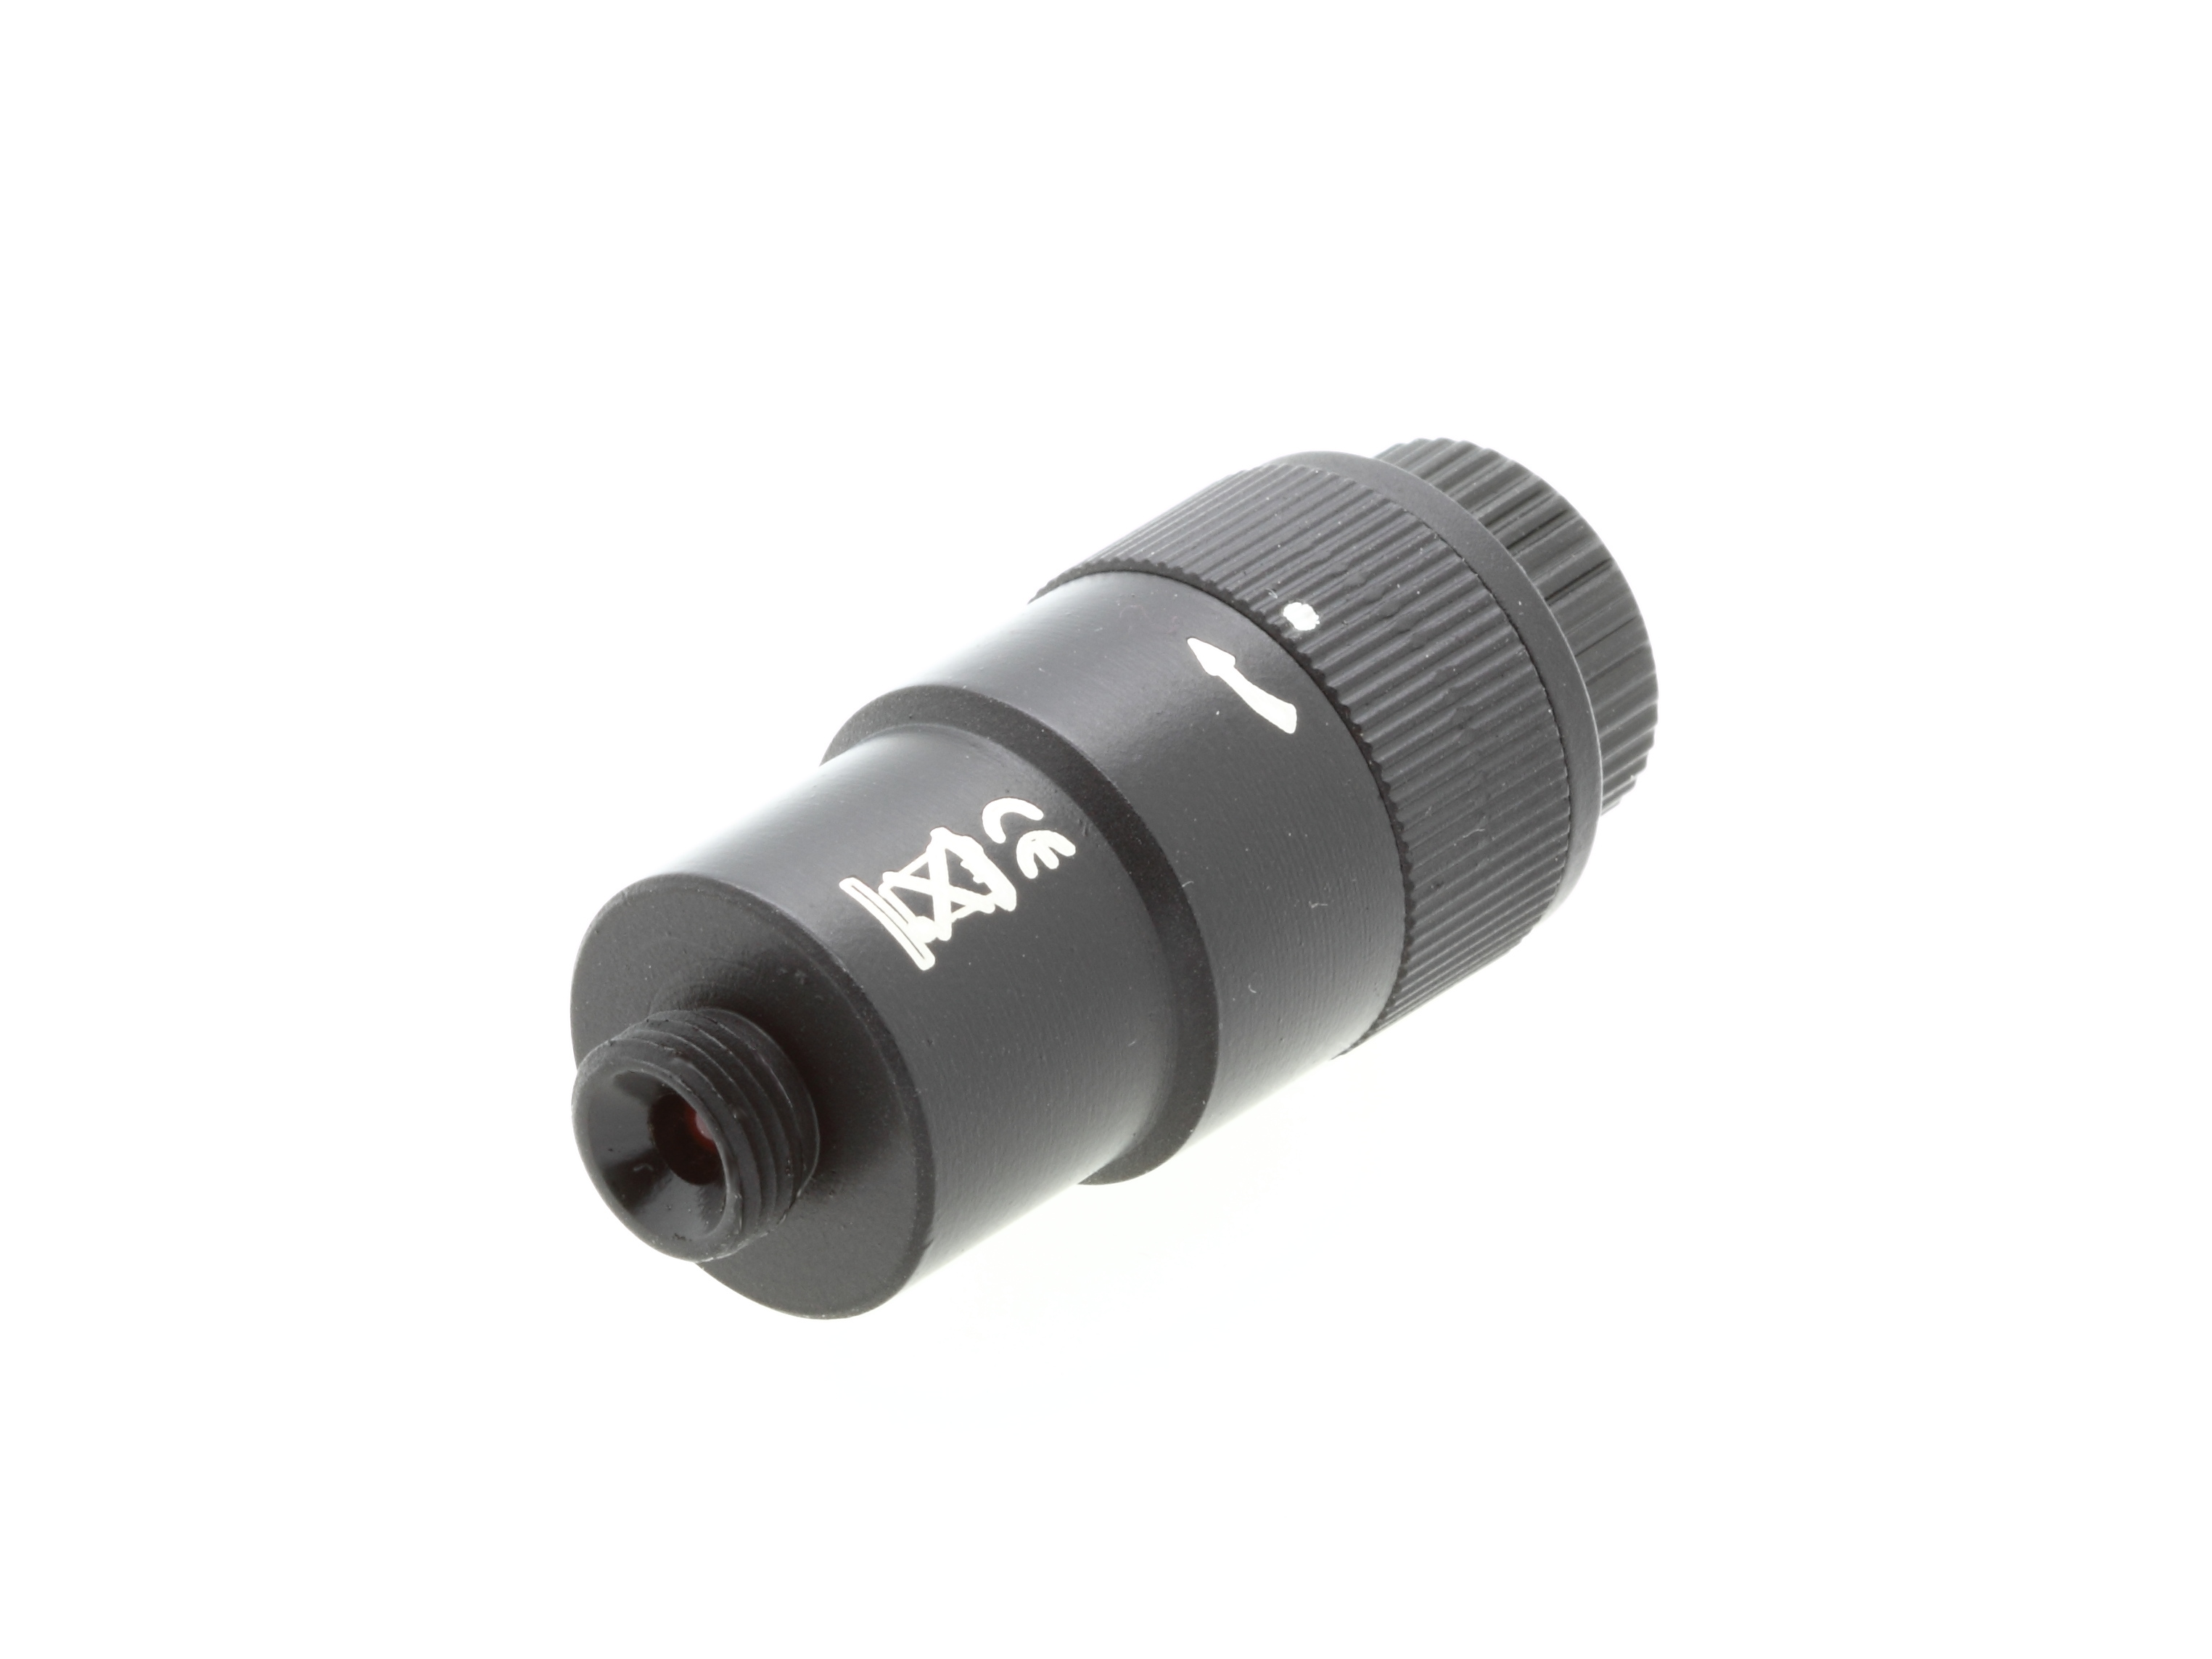 BRESSER Polsucherbeleuchtung für EXOS-2 Gewinde M8x0.75